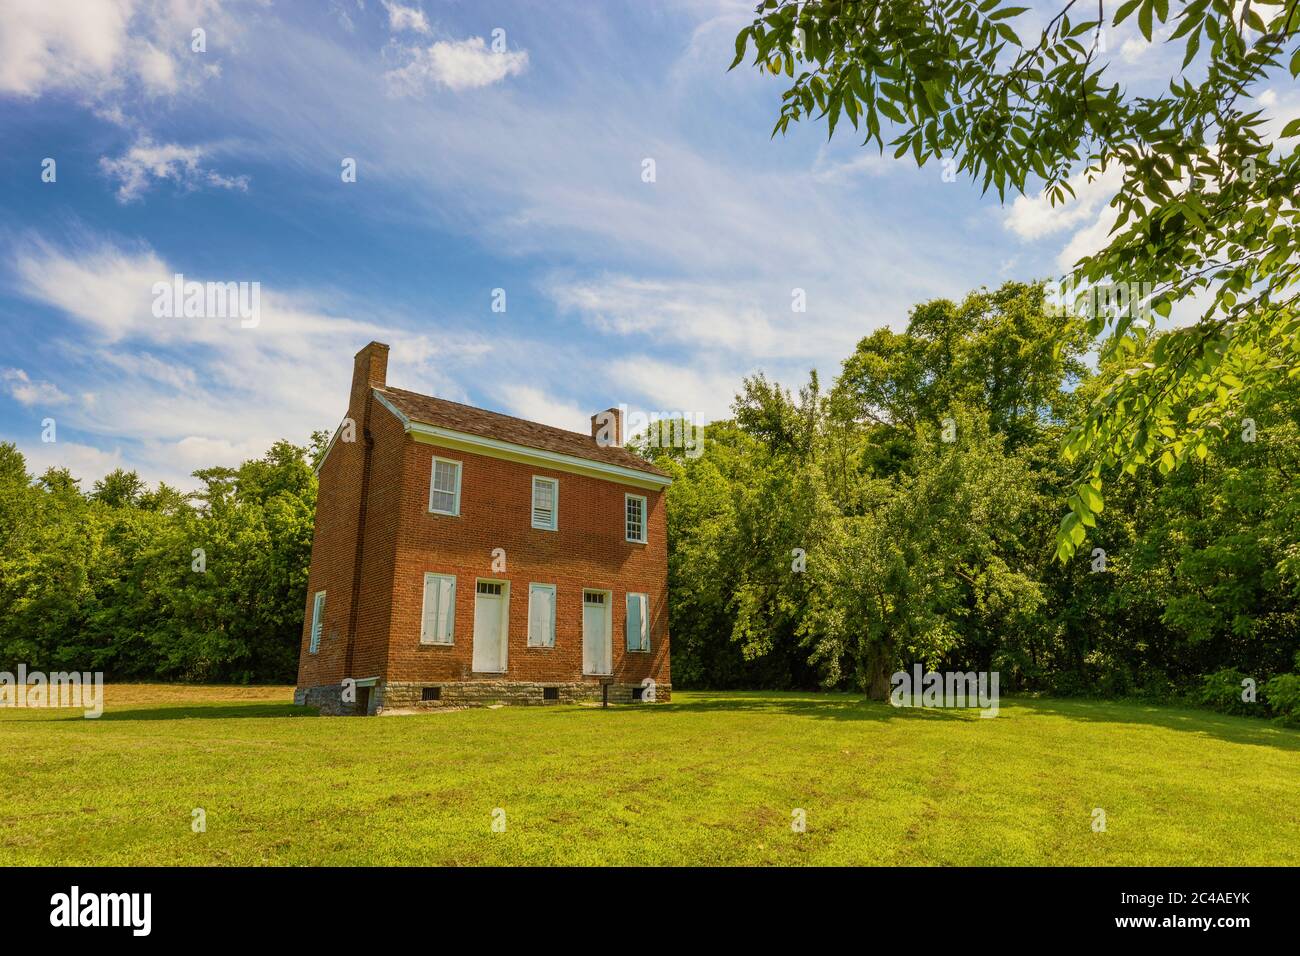 Natchez Trace Parkway, Tennessee, EE.UU.: 17 de junio de 2020: La casa Gorden, una de las pocas estructuras que quedan en el Parkway. Construido en 1818 Foto de stock